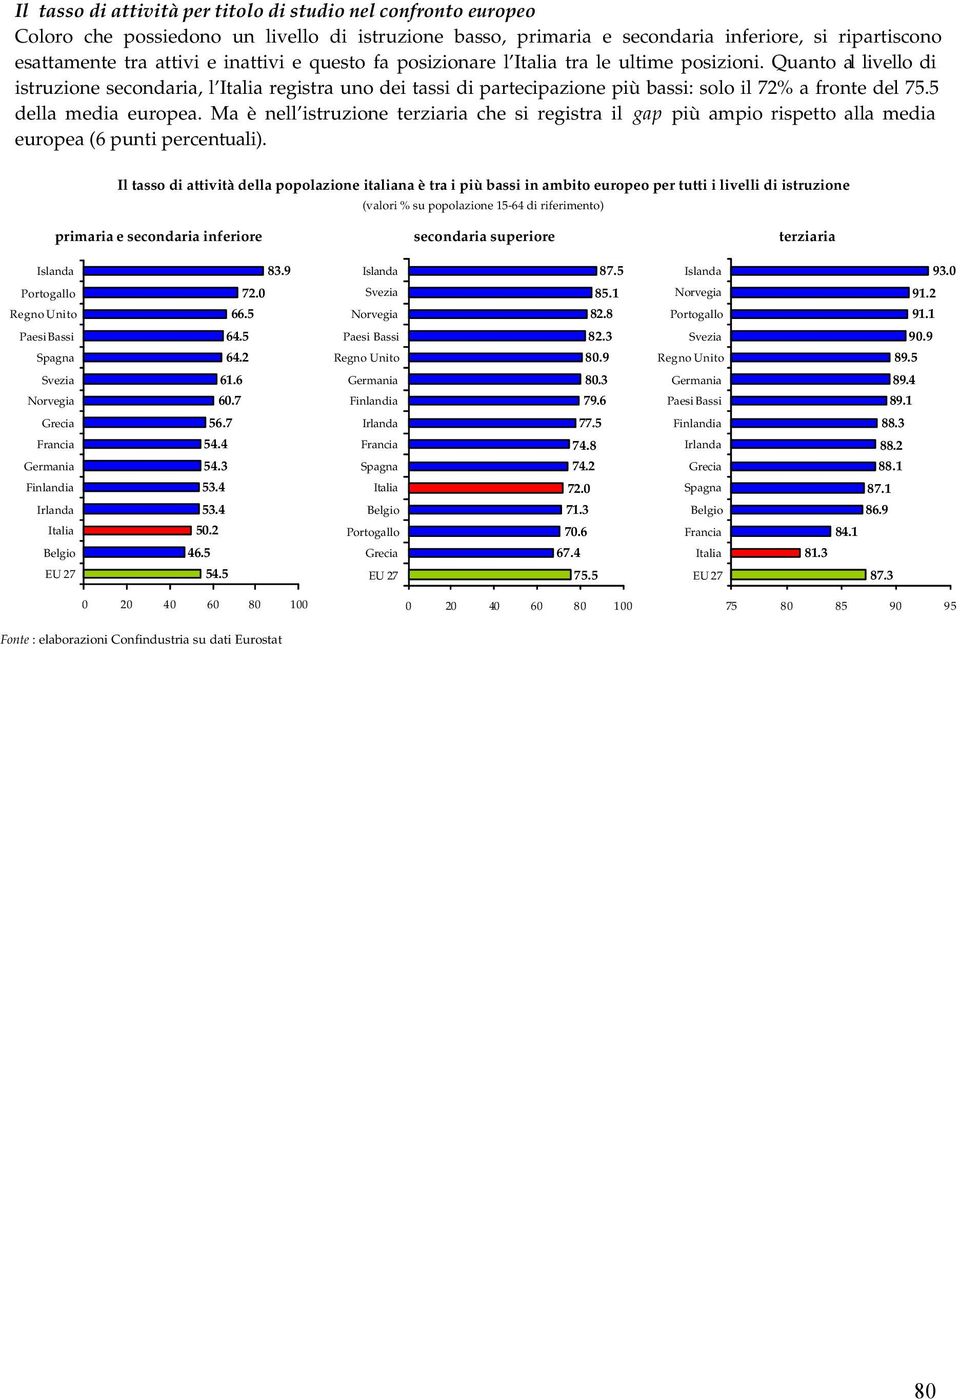 5 della media europea. Ma è nell istruzione terziaria che si registra il gap più ampio rispetto alla media europea (6 punti percentuali).